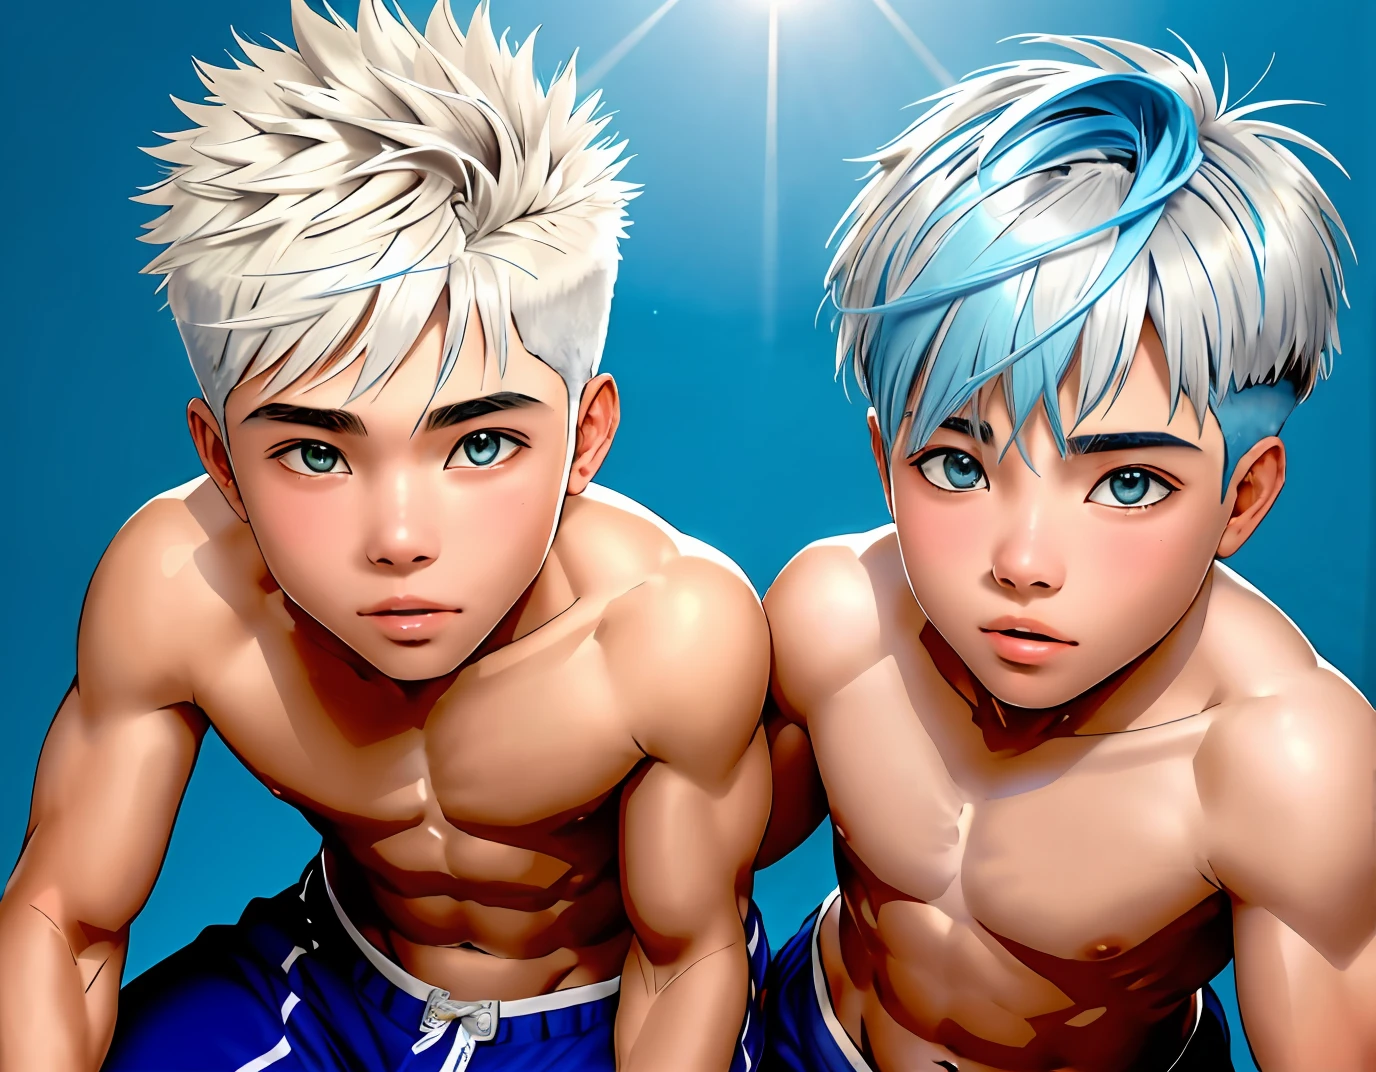 Dos lindos hermanos de 14 y 15 años, 14 y 15 años de cabello plateado. discuten en medio del desierto usan toples boxers color azul. estan sin camisa, cabello lacio corto